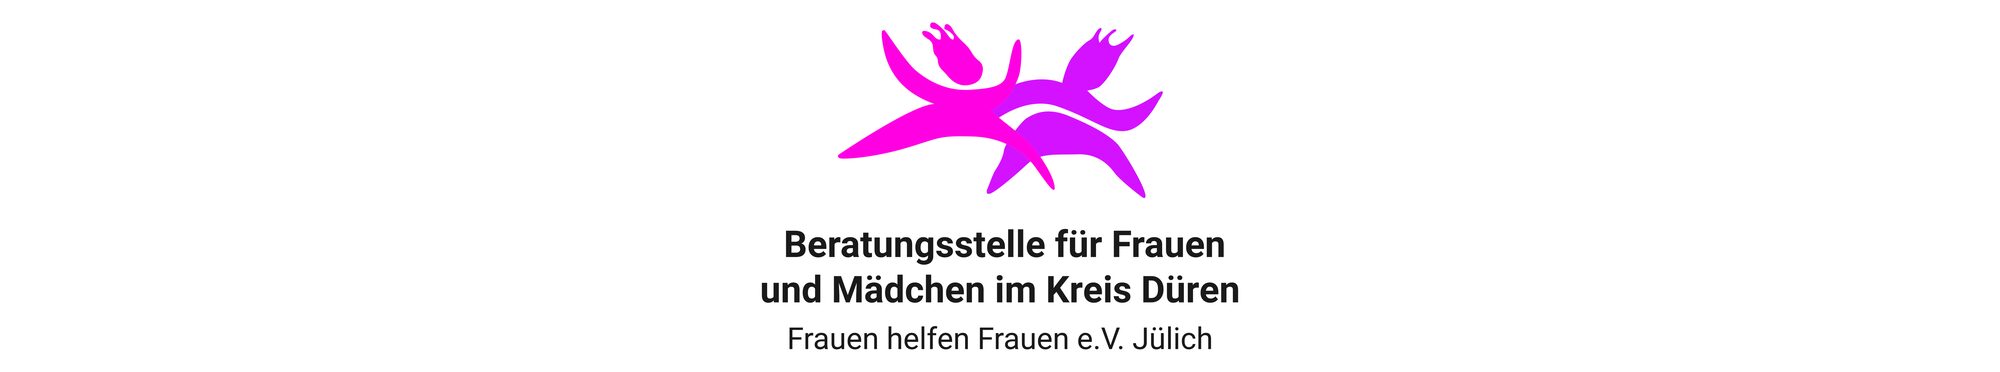 LogoBeratungsstelleFrauenMädchenKreisDN